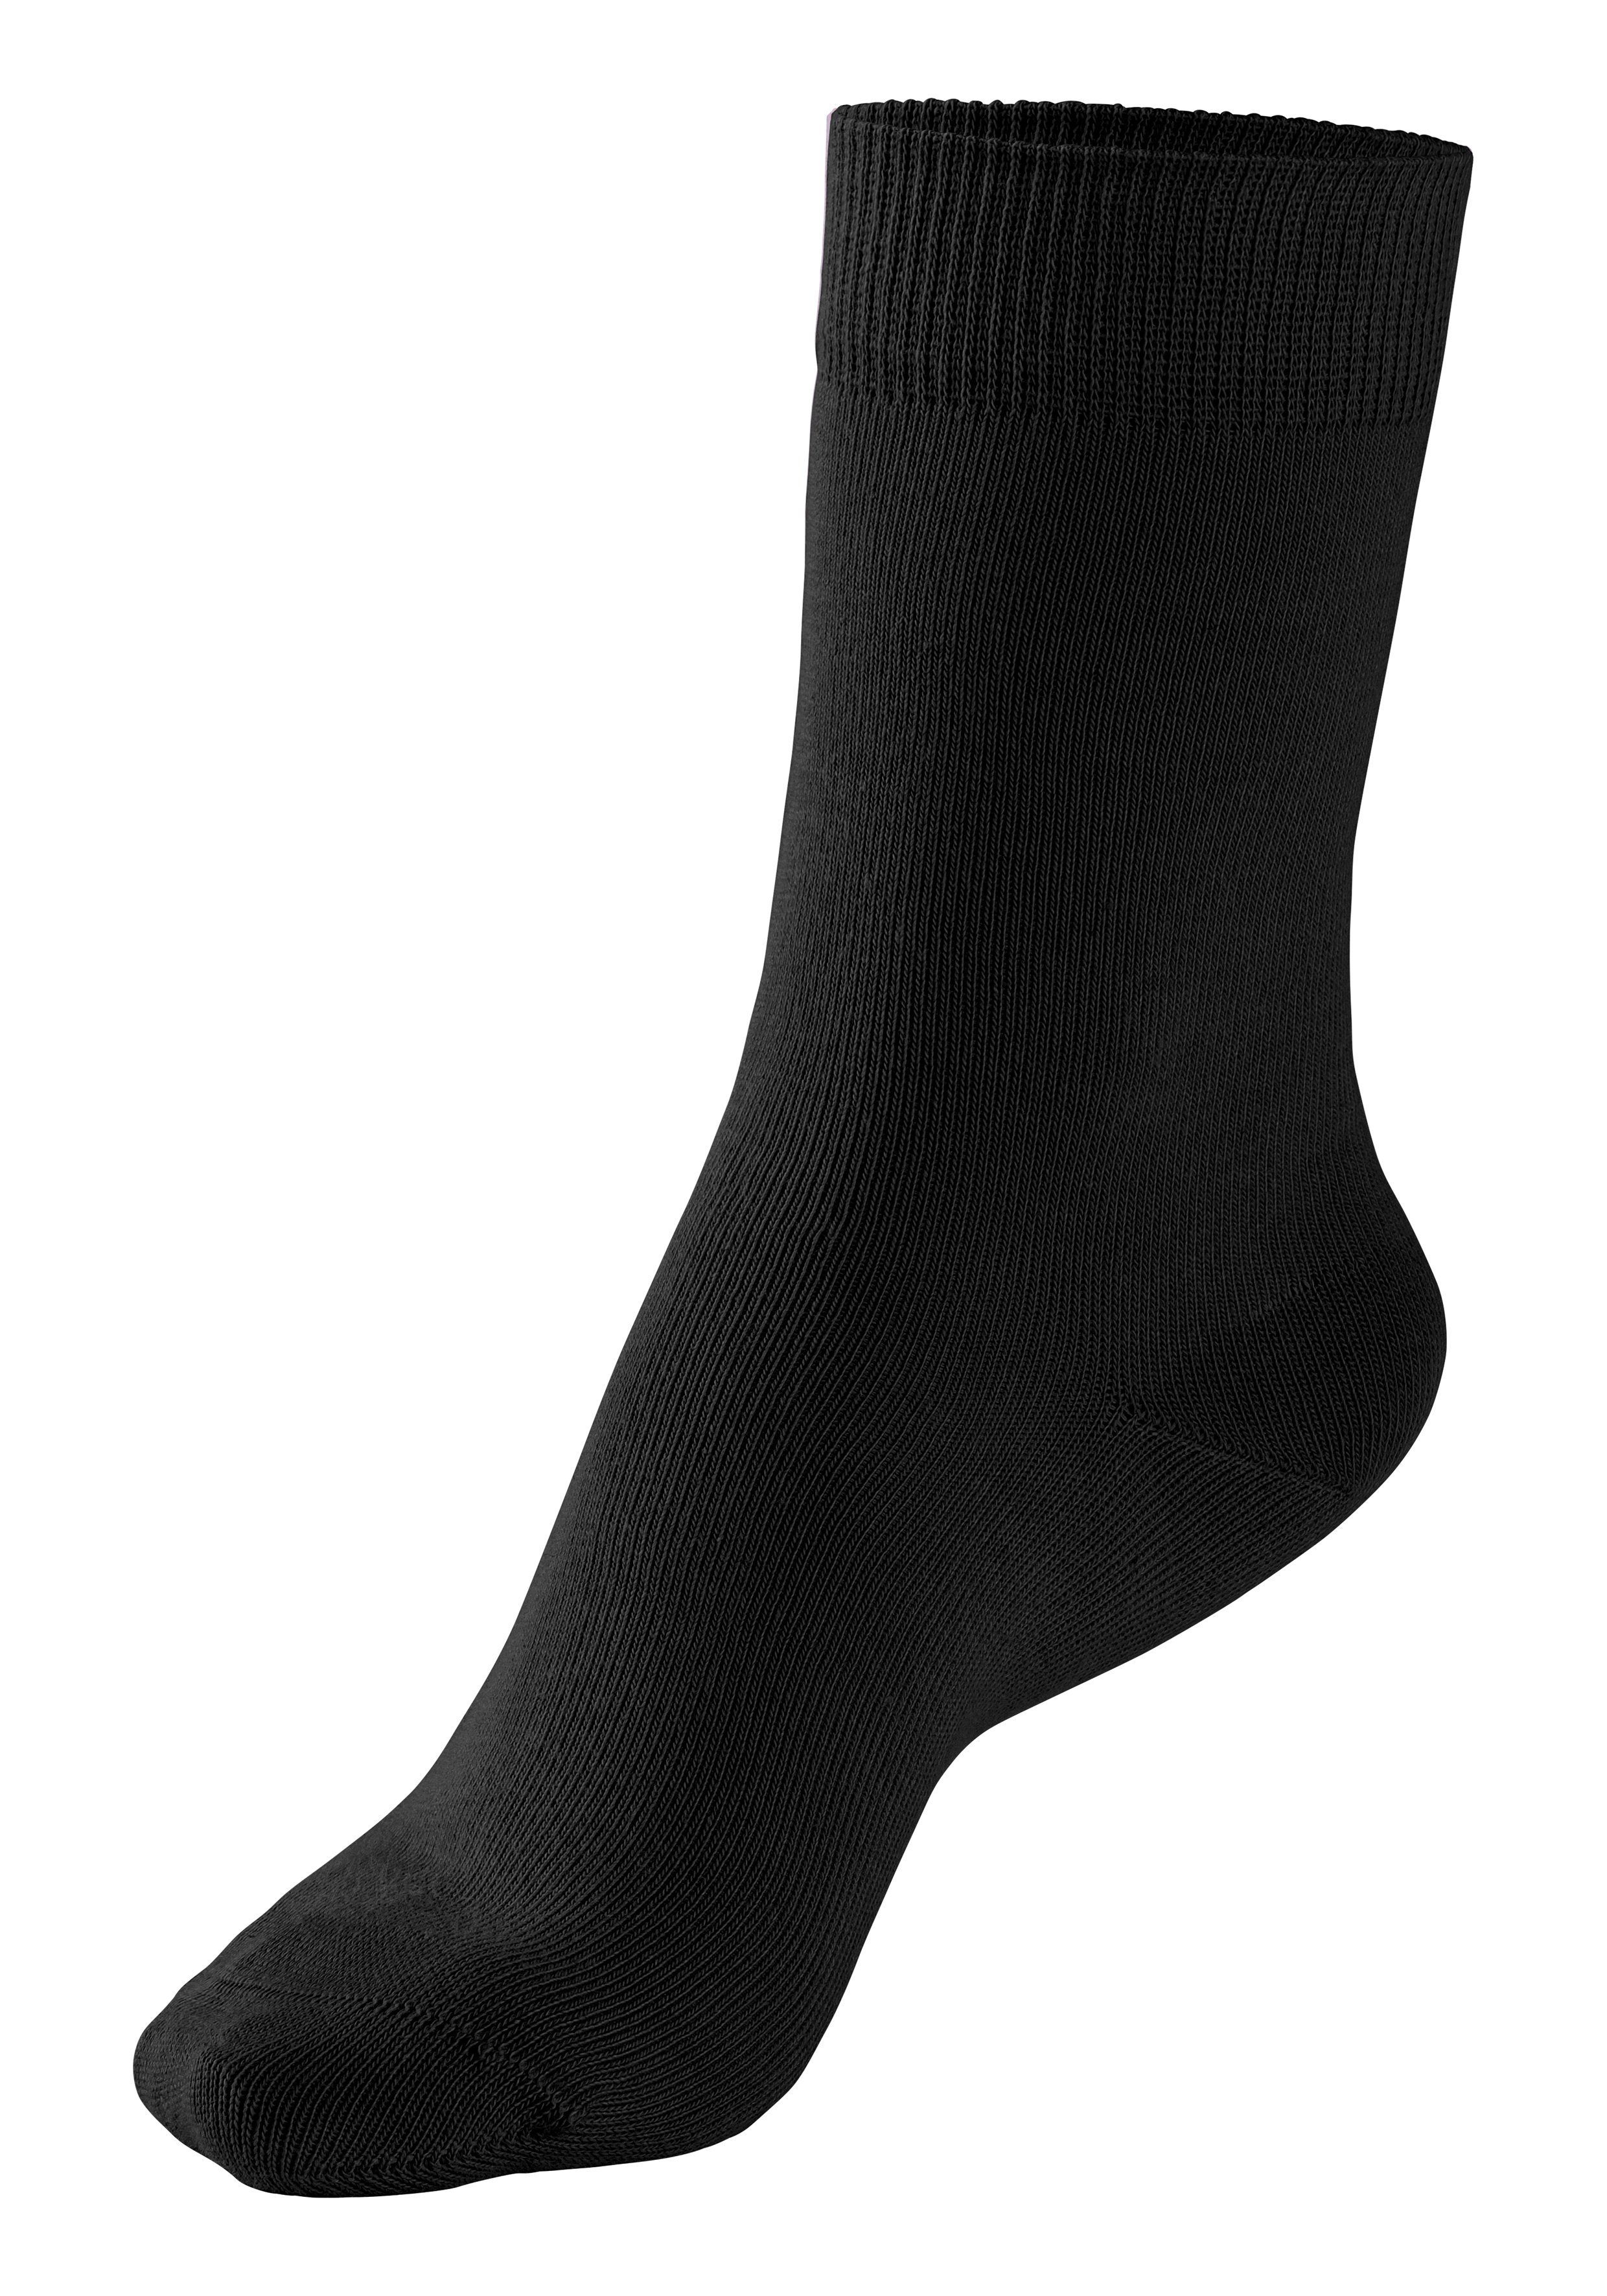 H.I.S Socken (Set, 4-Paar) grau-schwarz 4x unterschiedlichen Farbzusammenstellungen in